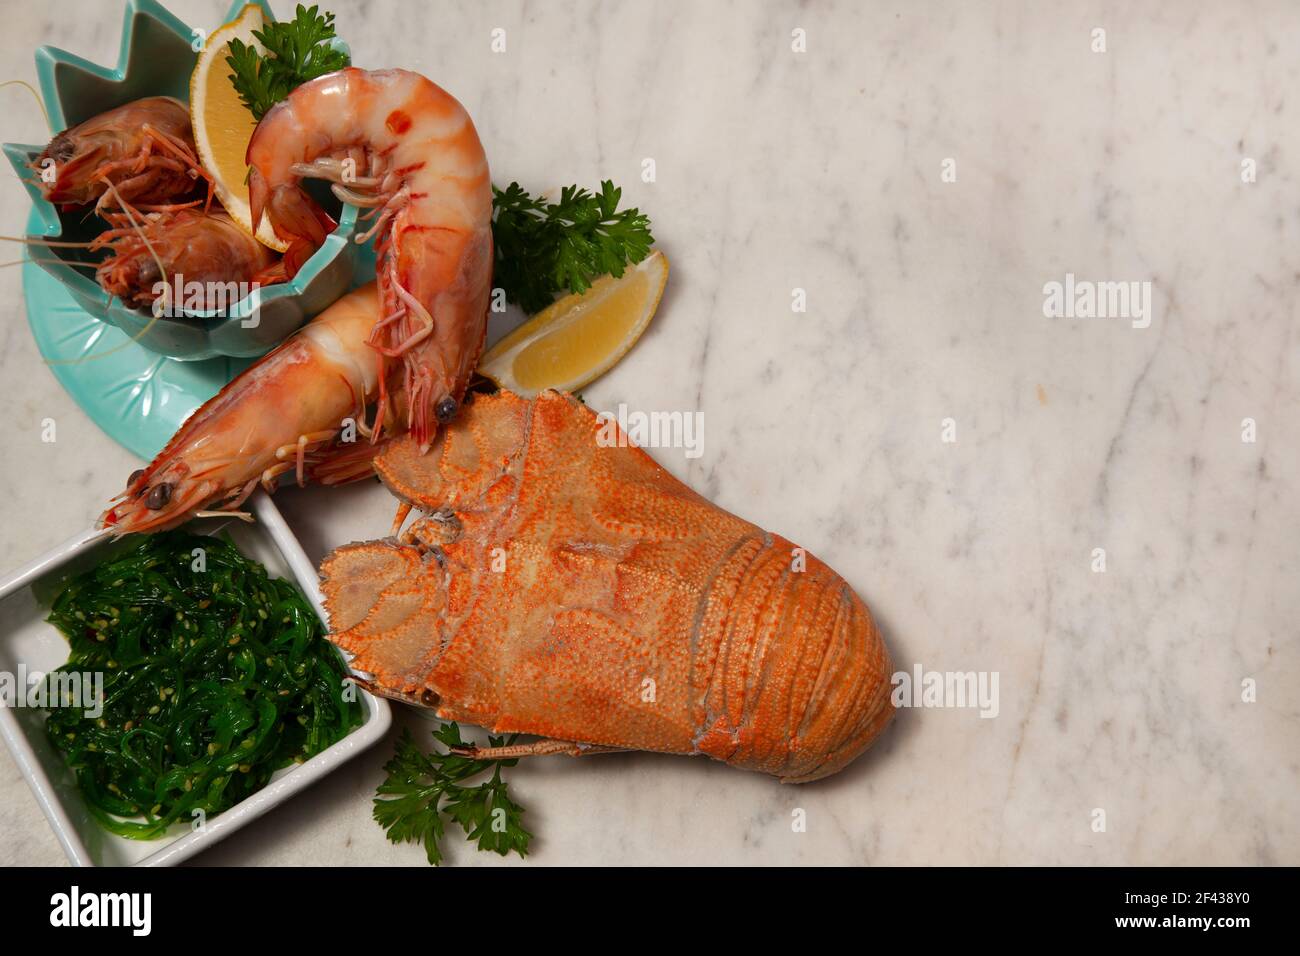 Una festa di pesce che include grandi gamberi del re in una ciotola, Moreton Bay Bug, un tipo di aragosta, e insalata di alghe su uno sfondo di marmo bianco e grigio. Foto Stock